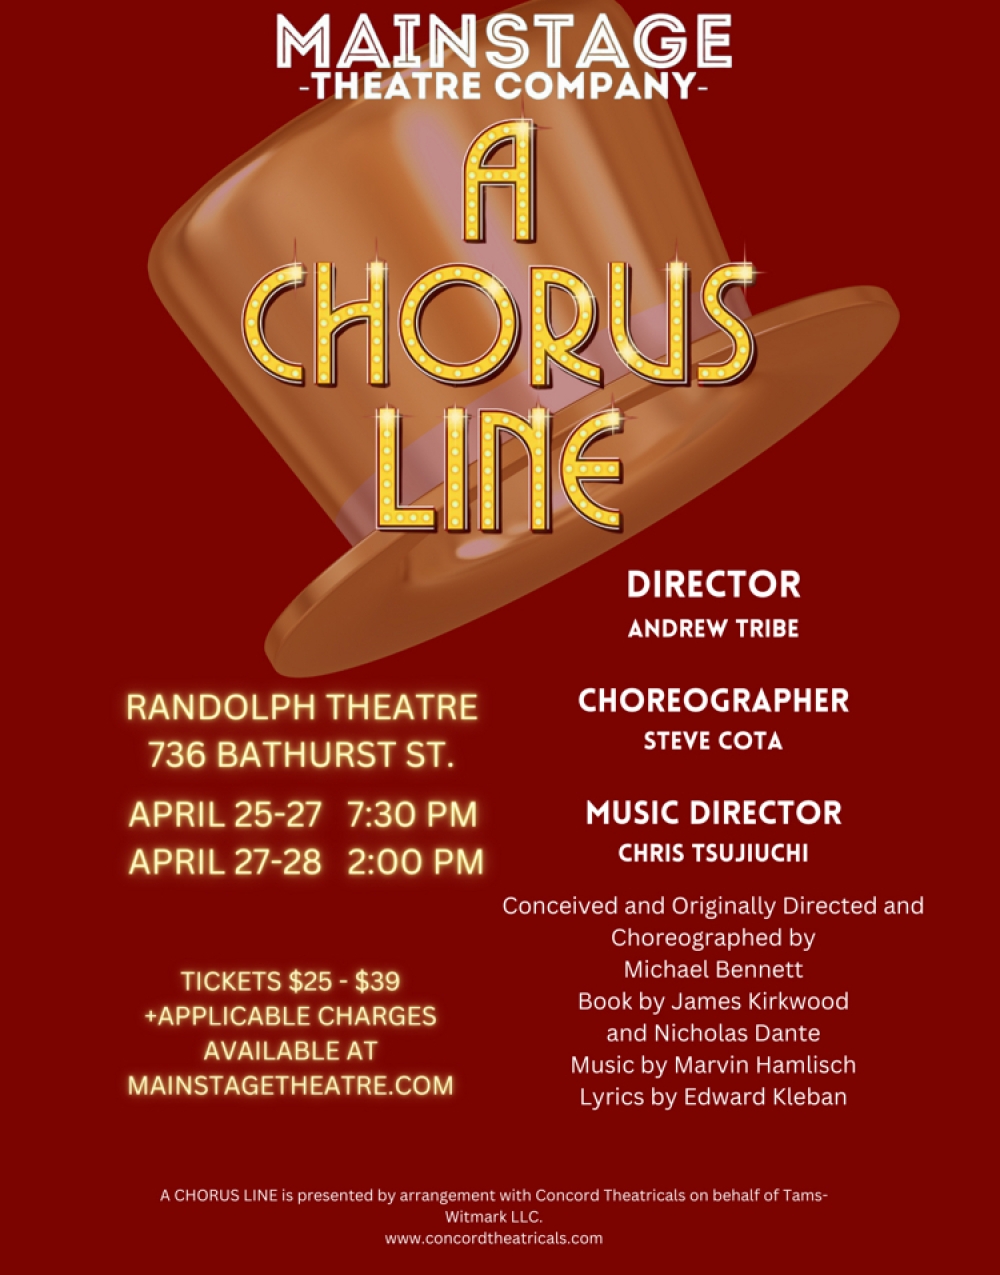 A Chorus Line at The Randolph Theatre